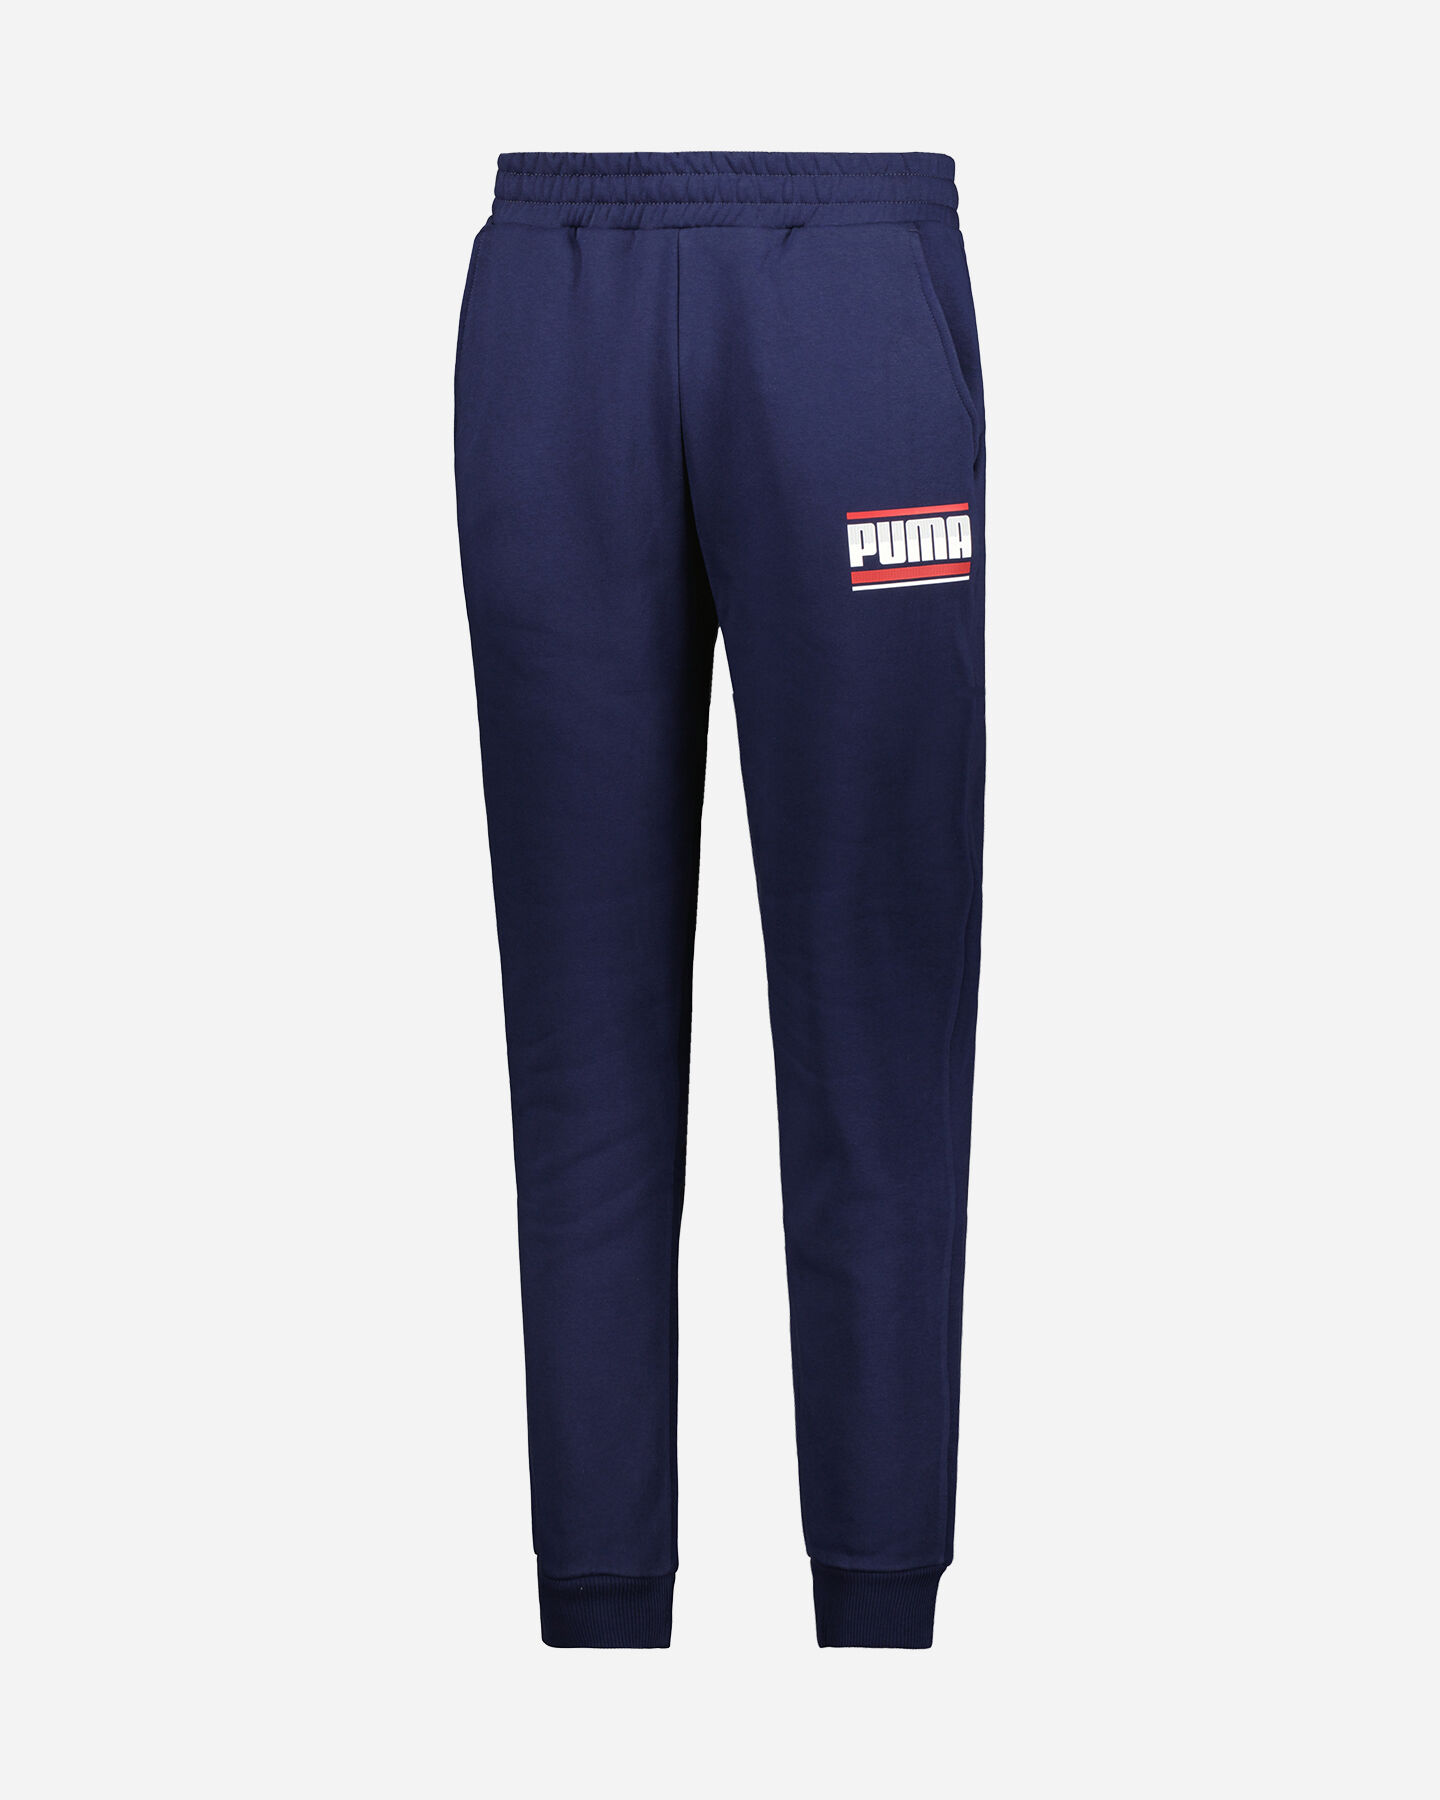  Pantalone PUMA BLANK LOGO M S5504770|01|XS scatto 0